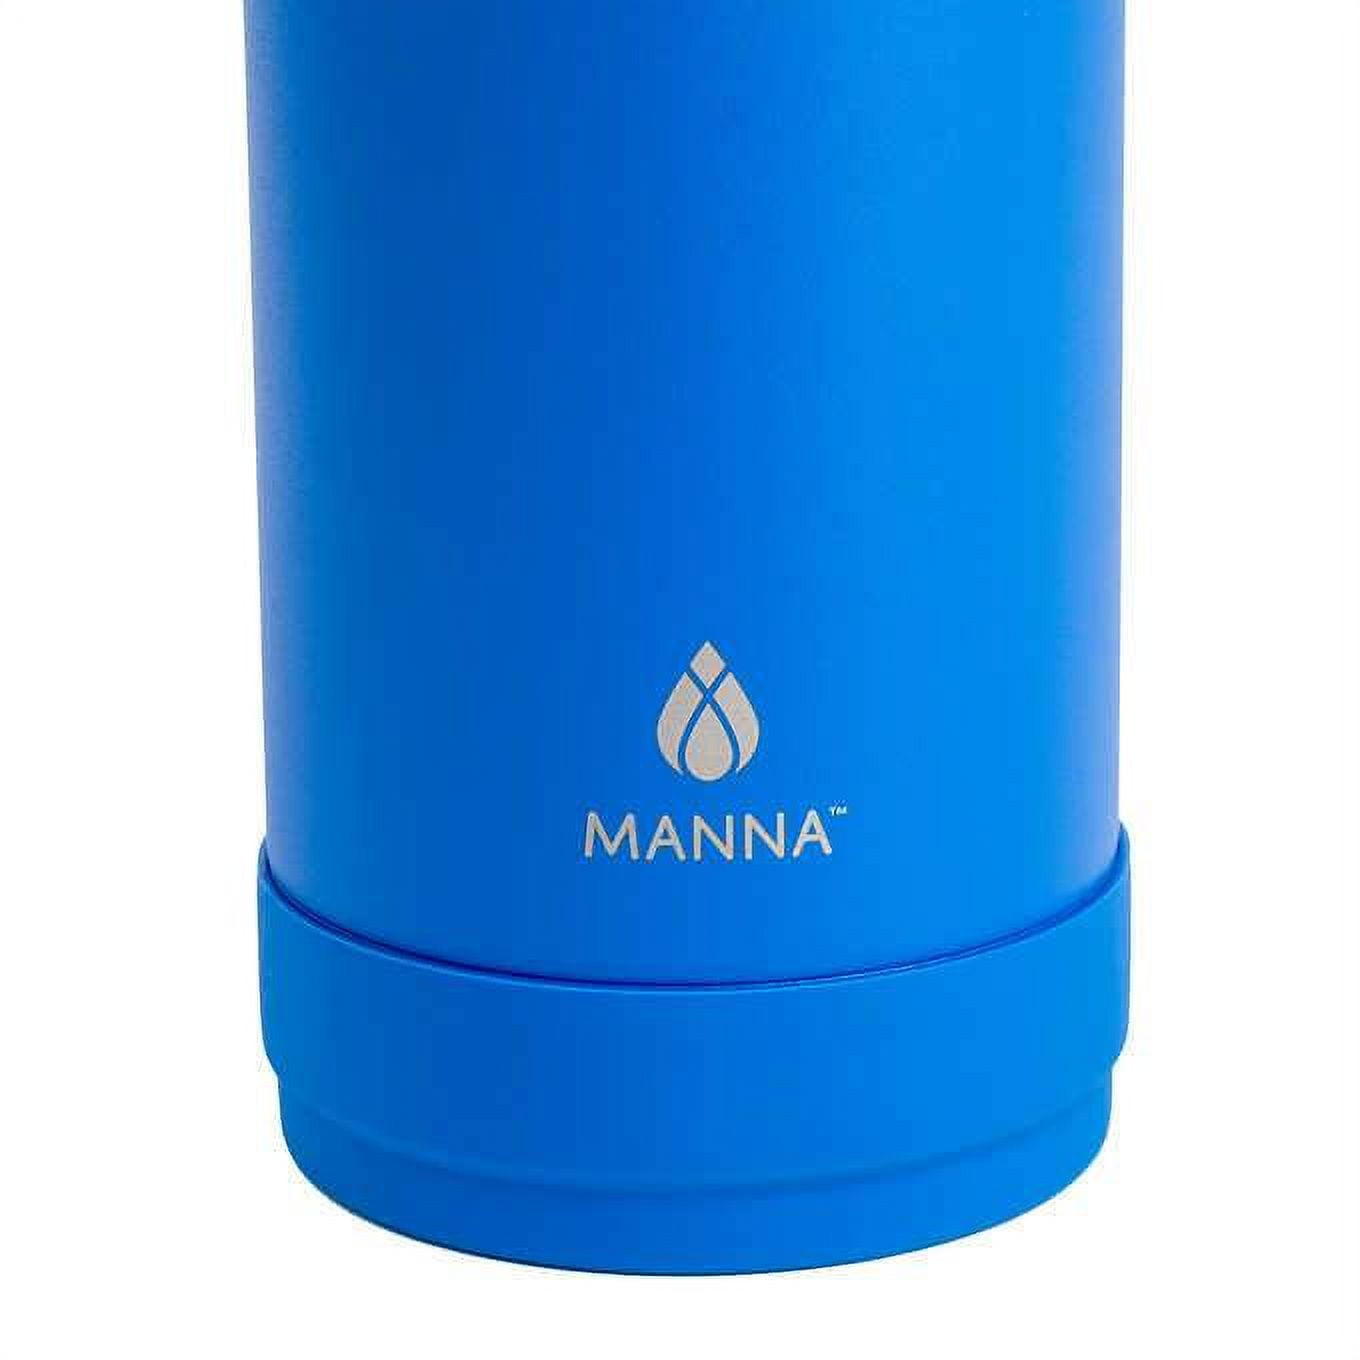 Manna Hammered Bottle, Assorted, 2-pk